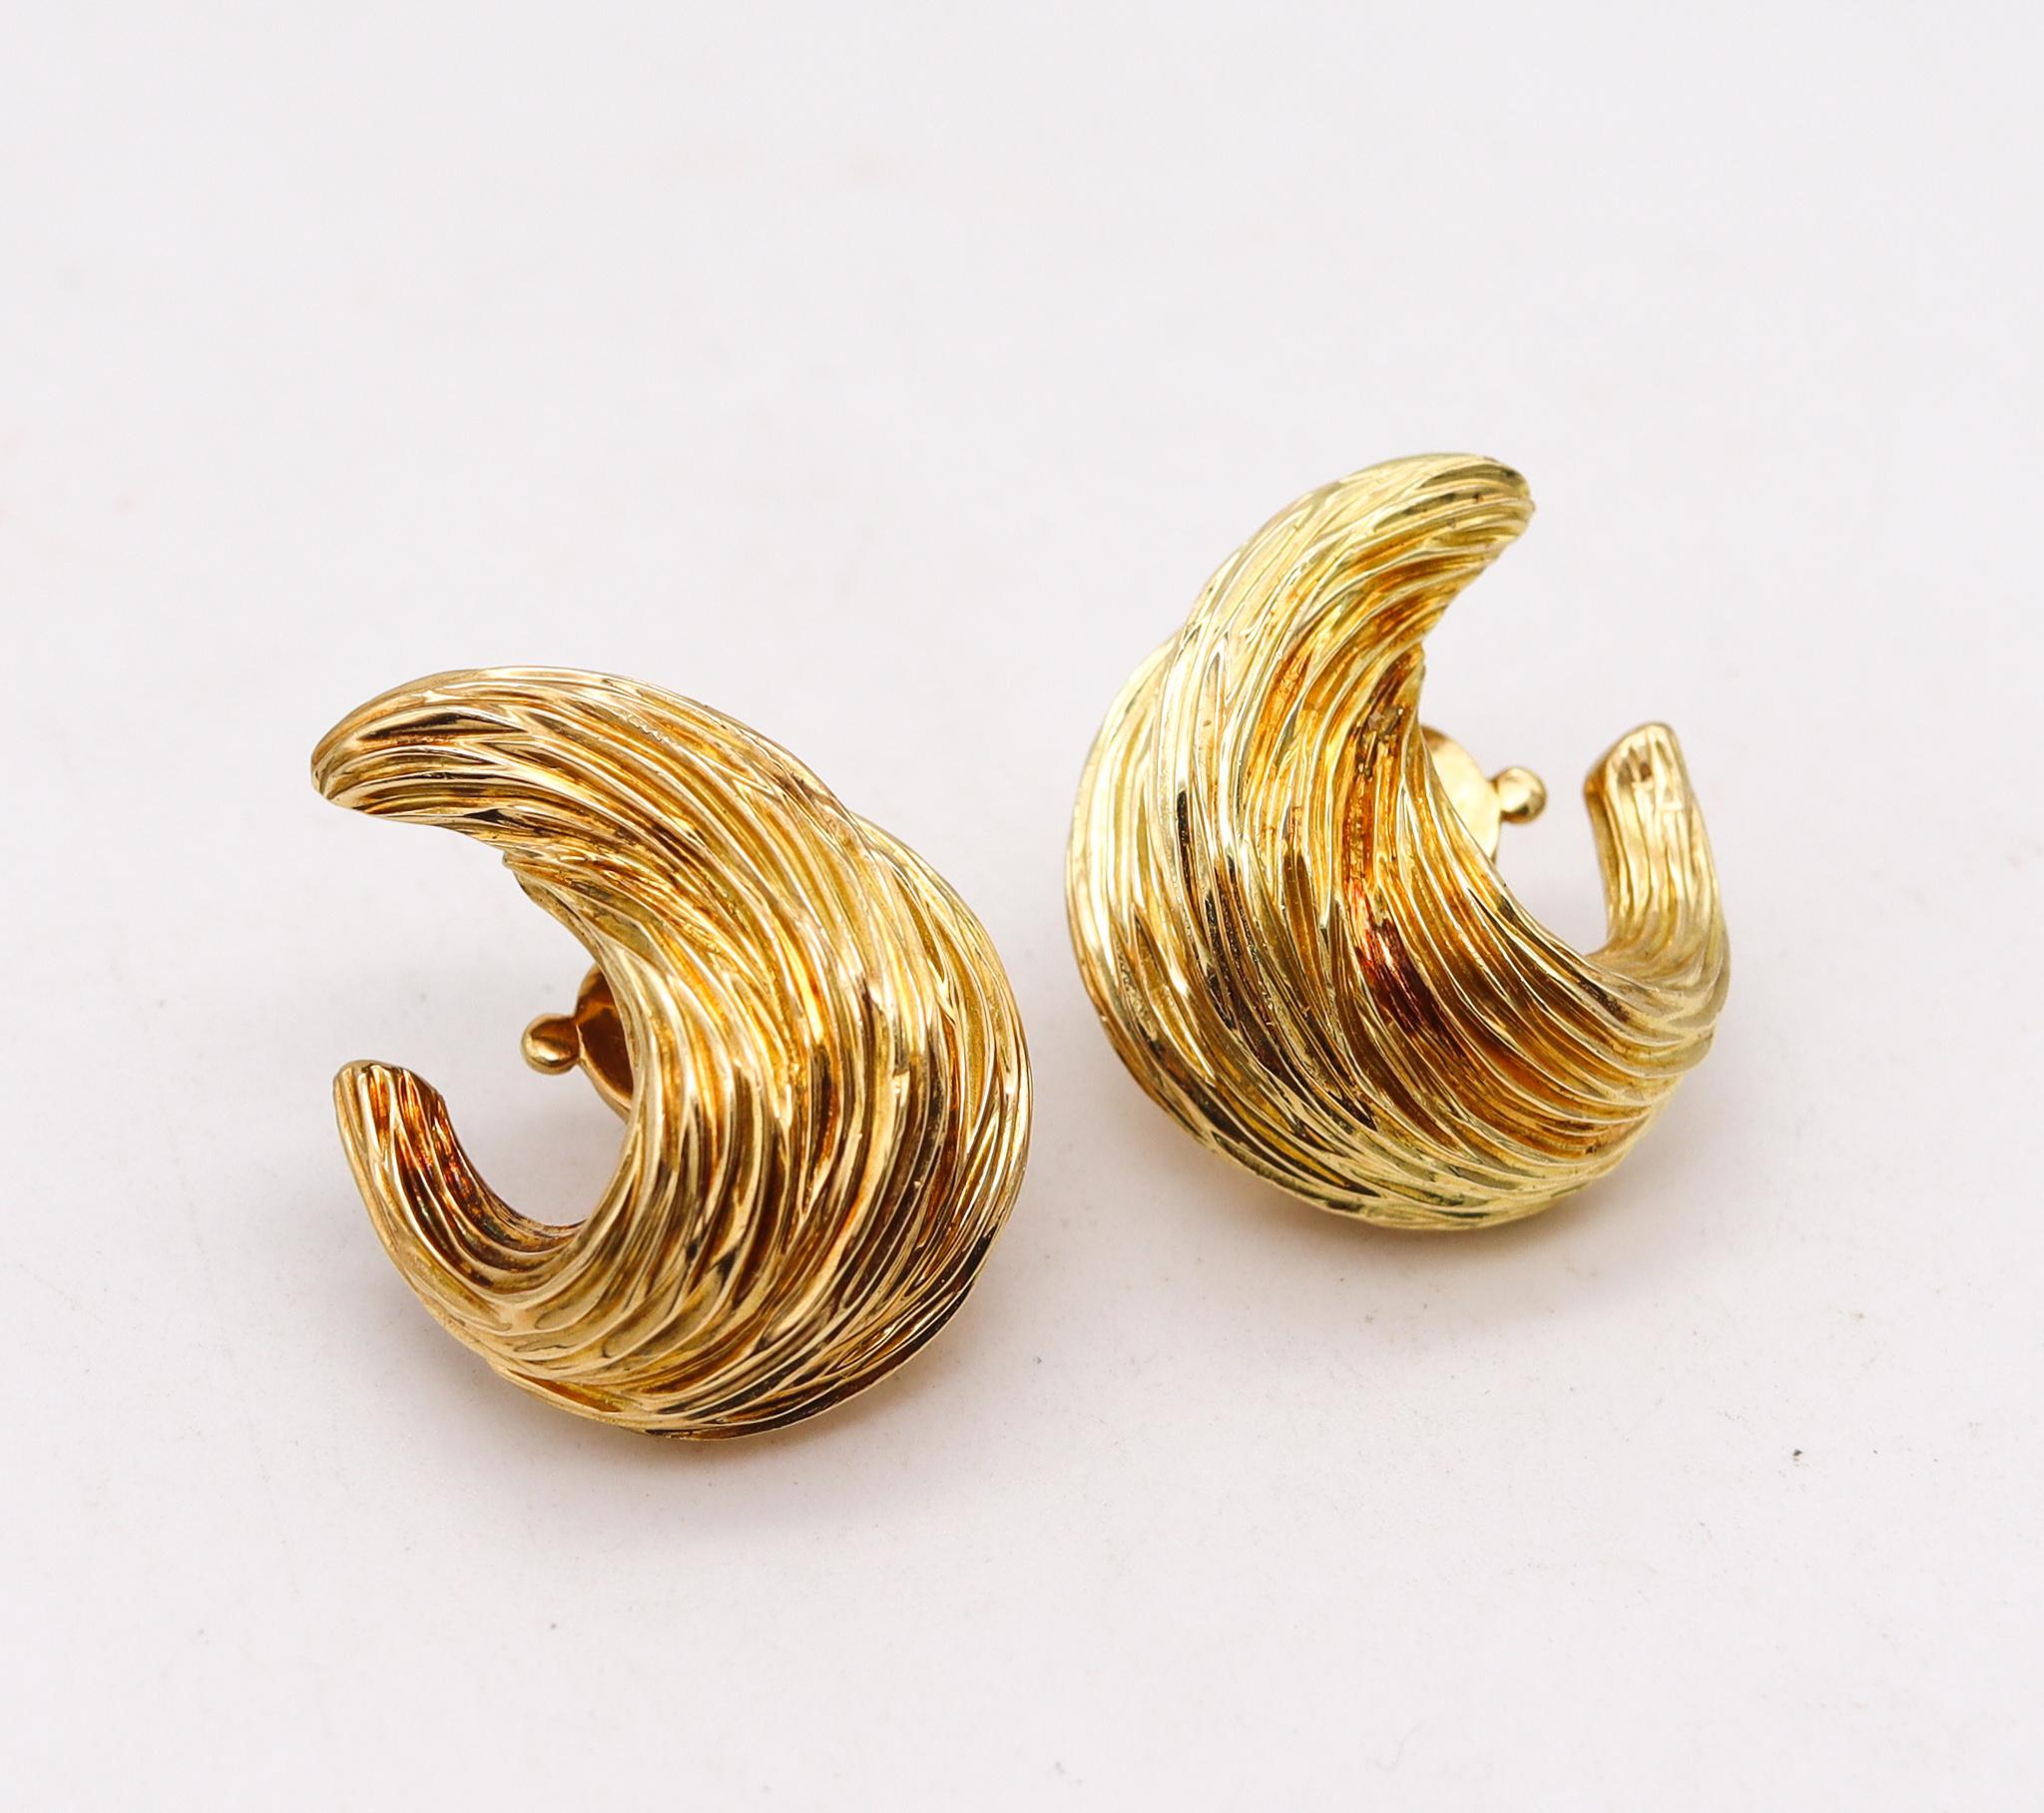 Boucles d'oreilles texturées conçues par Fred Paris.

Une belle paire pour tous les jours, créée à Paris en France par la maison de joaillerie Fred, à la fin des années 1960. Ces pièces ont été façonnées en forme de flammes en or jaune riche et